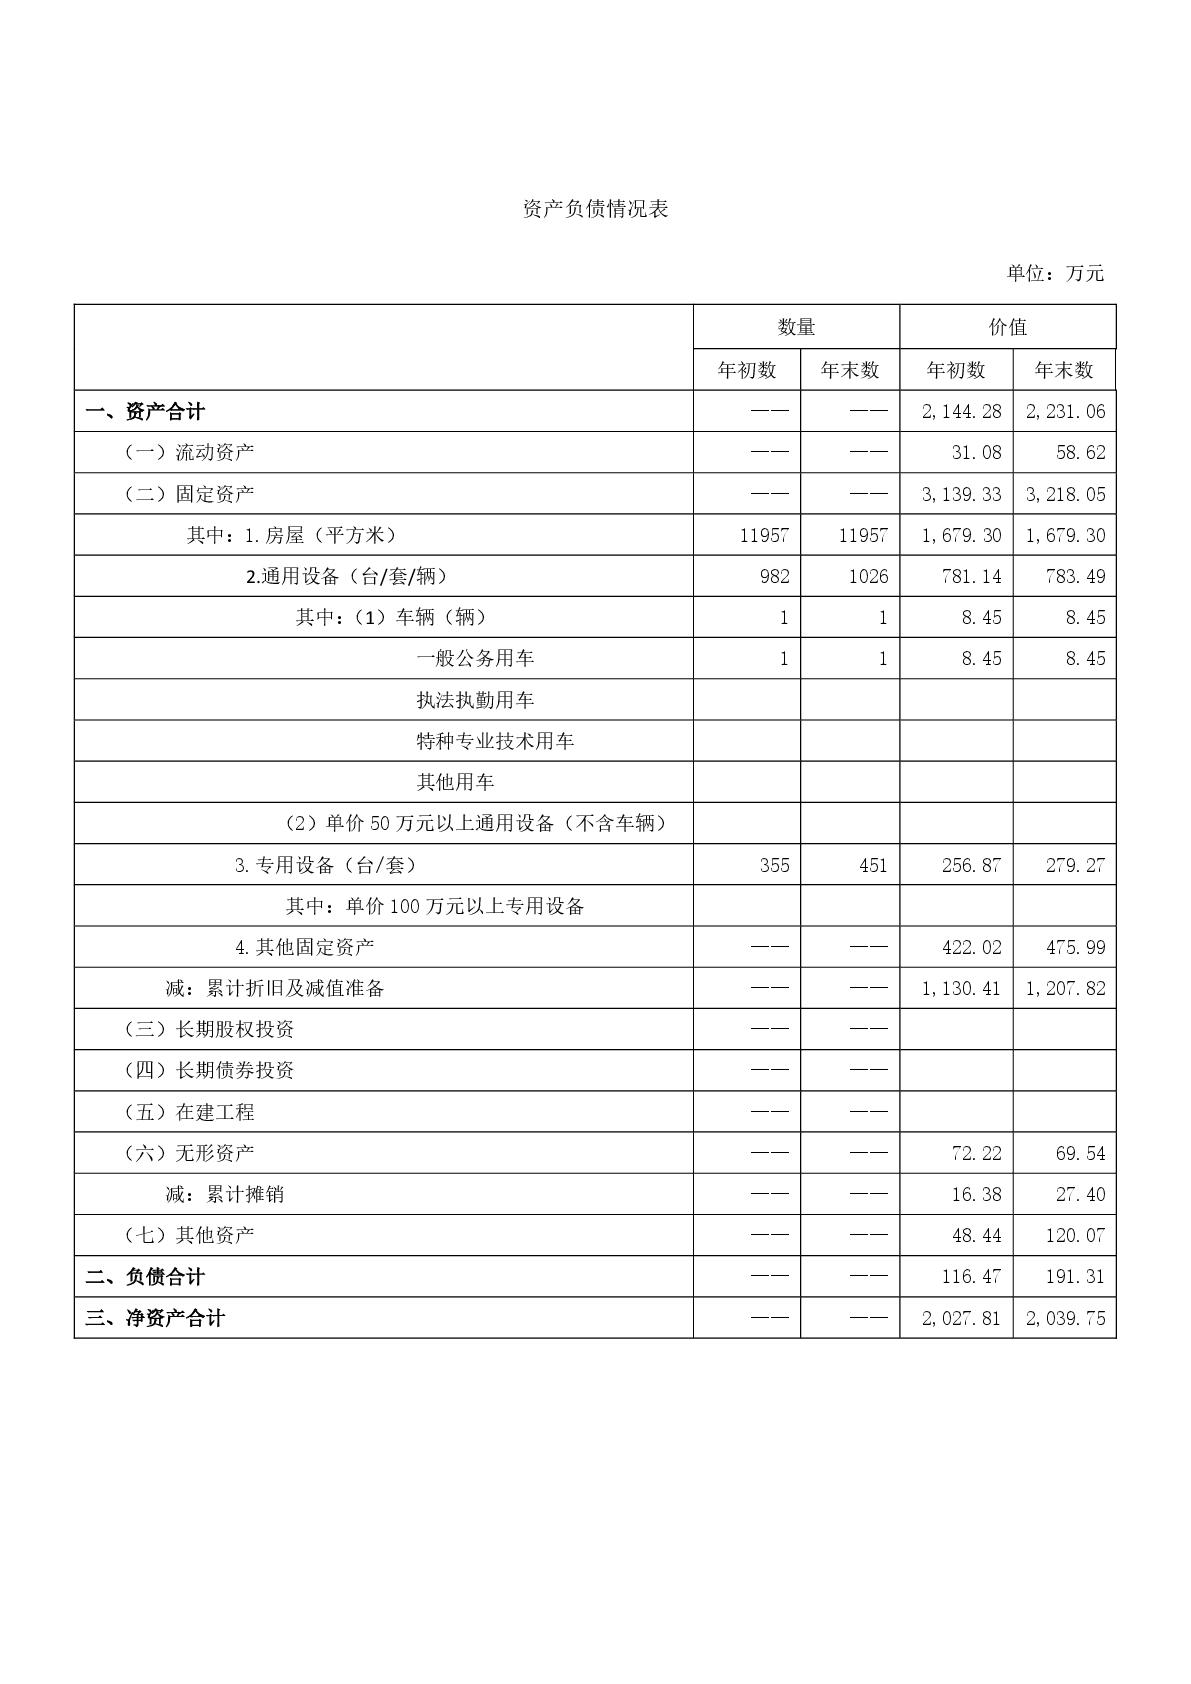 015上海市嘉定区清水路小学2020年度决算-017.jpg